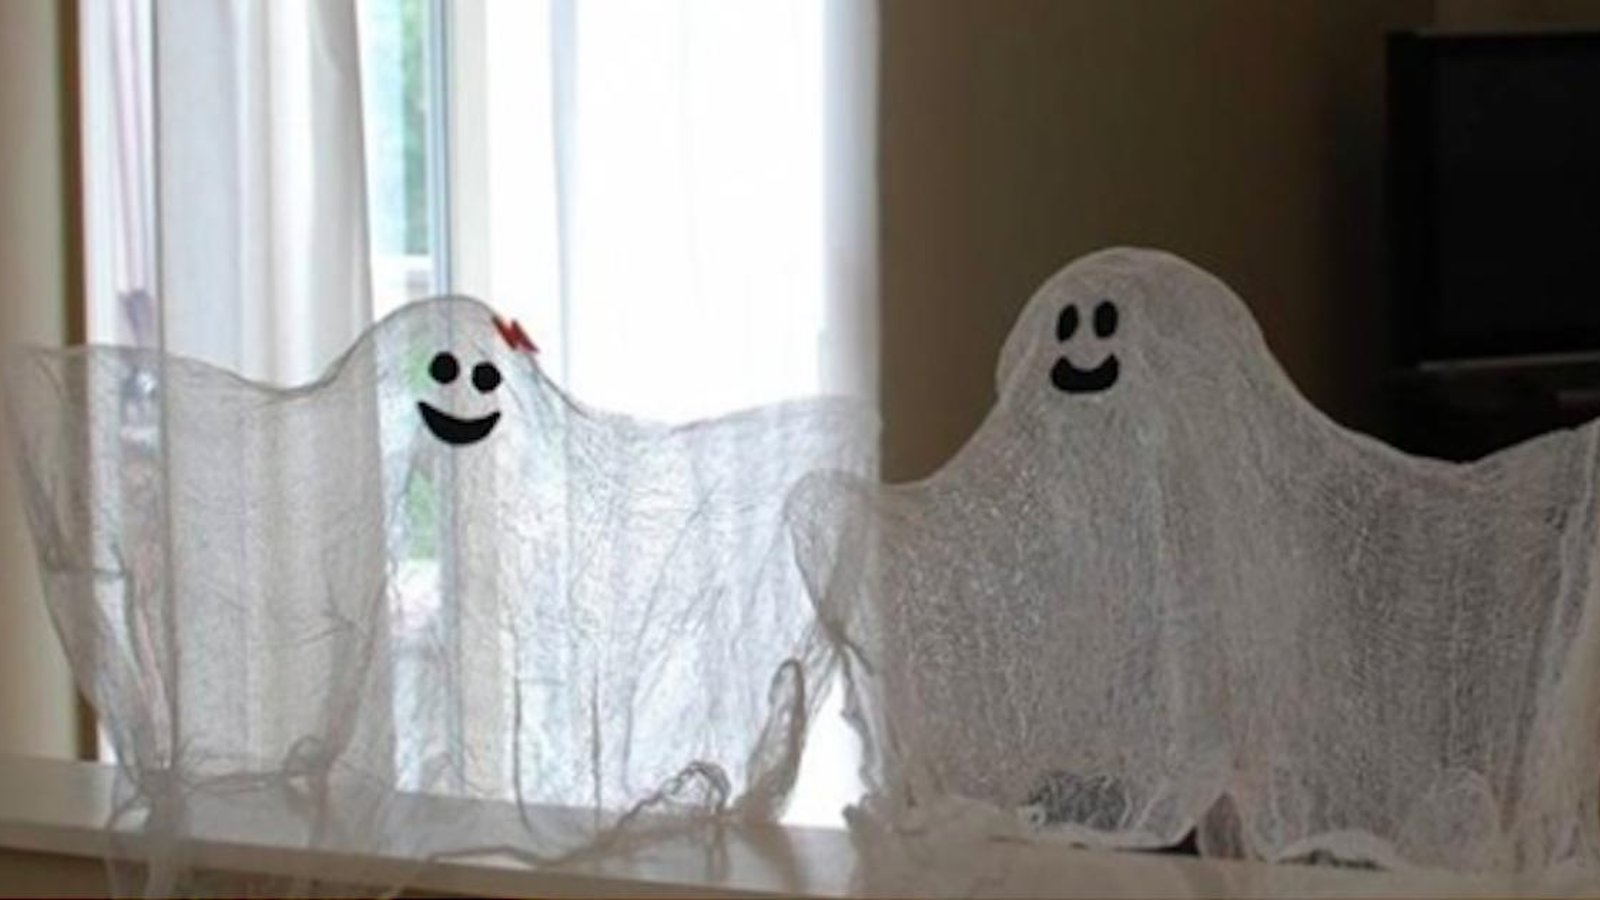 2 décorations mettant en vedette les fantômes à faire avec les enfants pour Halloween